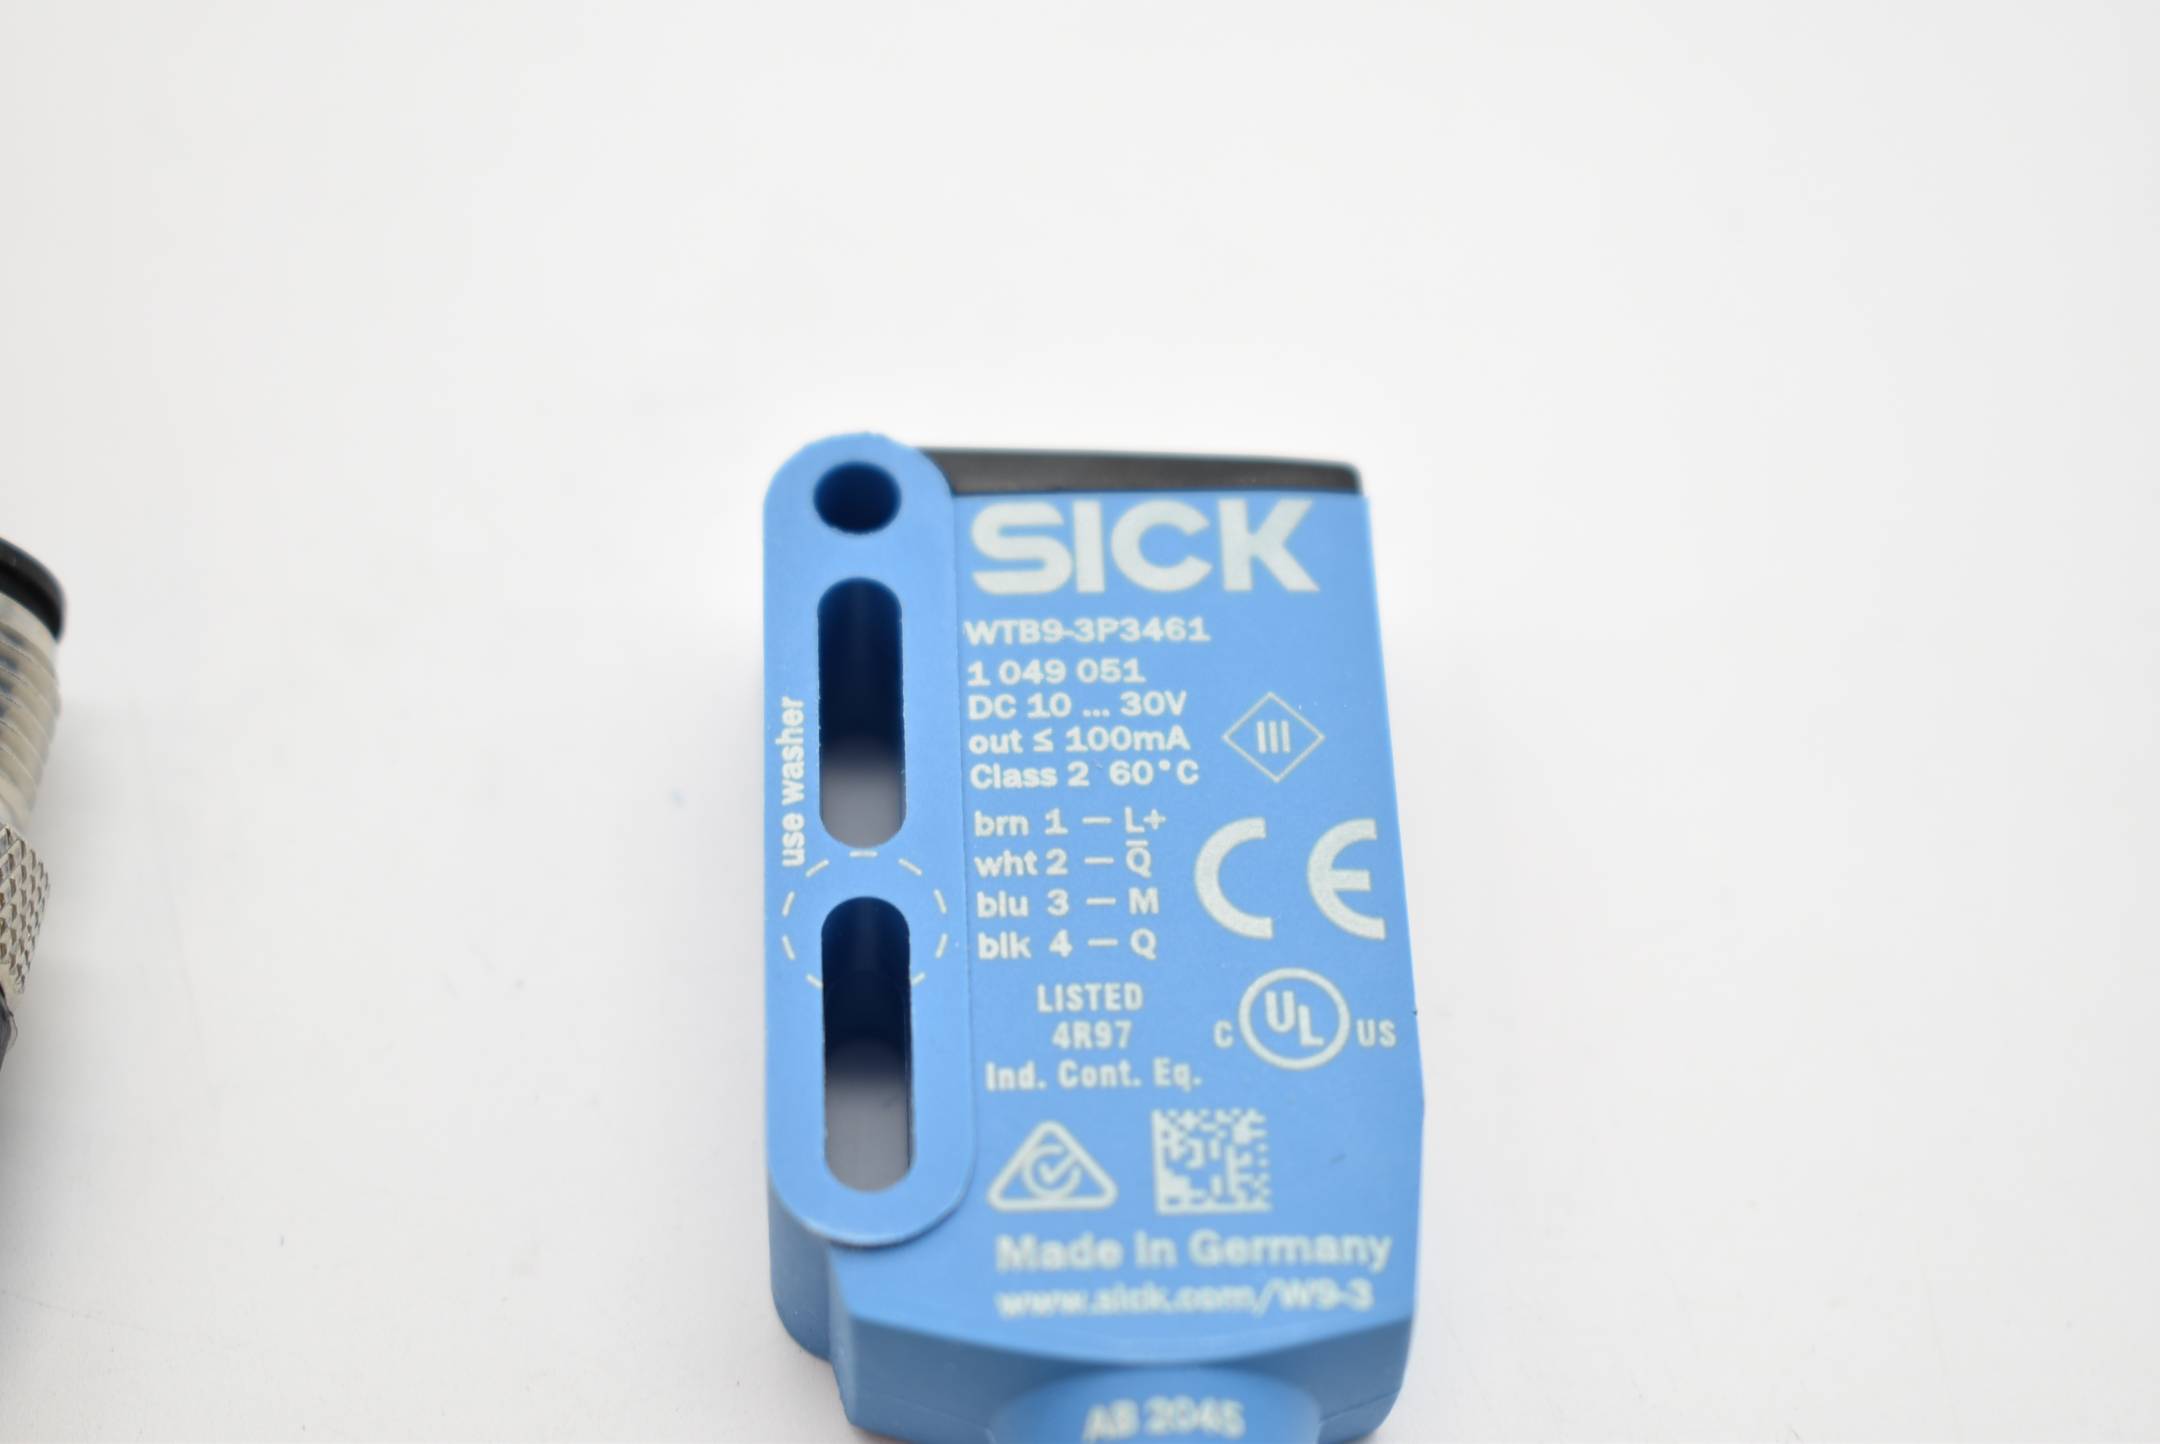 SICK Fotoelektrischer Schalter Sensor WTB9-3P3461 ( 1049051 )